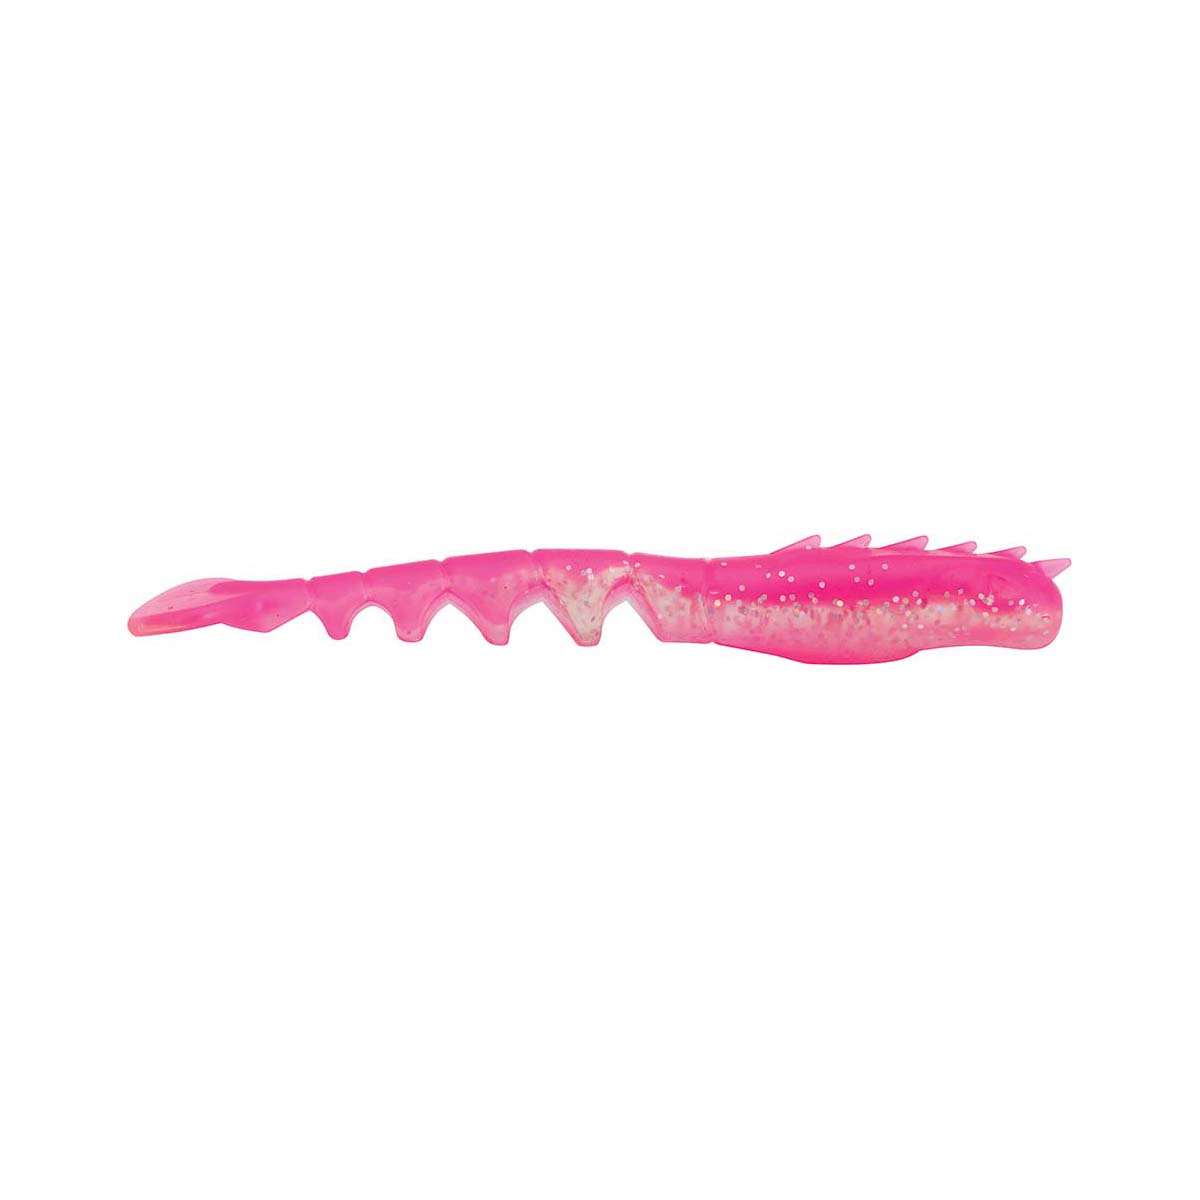 Berkley PowerBait Fan Tail Shrimp Soft Plastic Lure 4in Pink Glitter